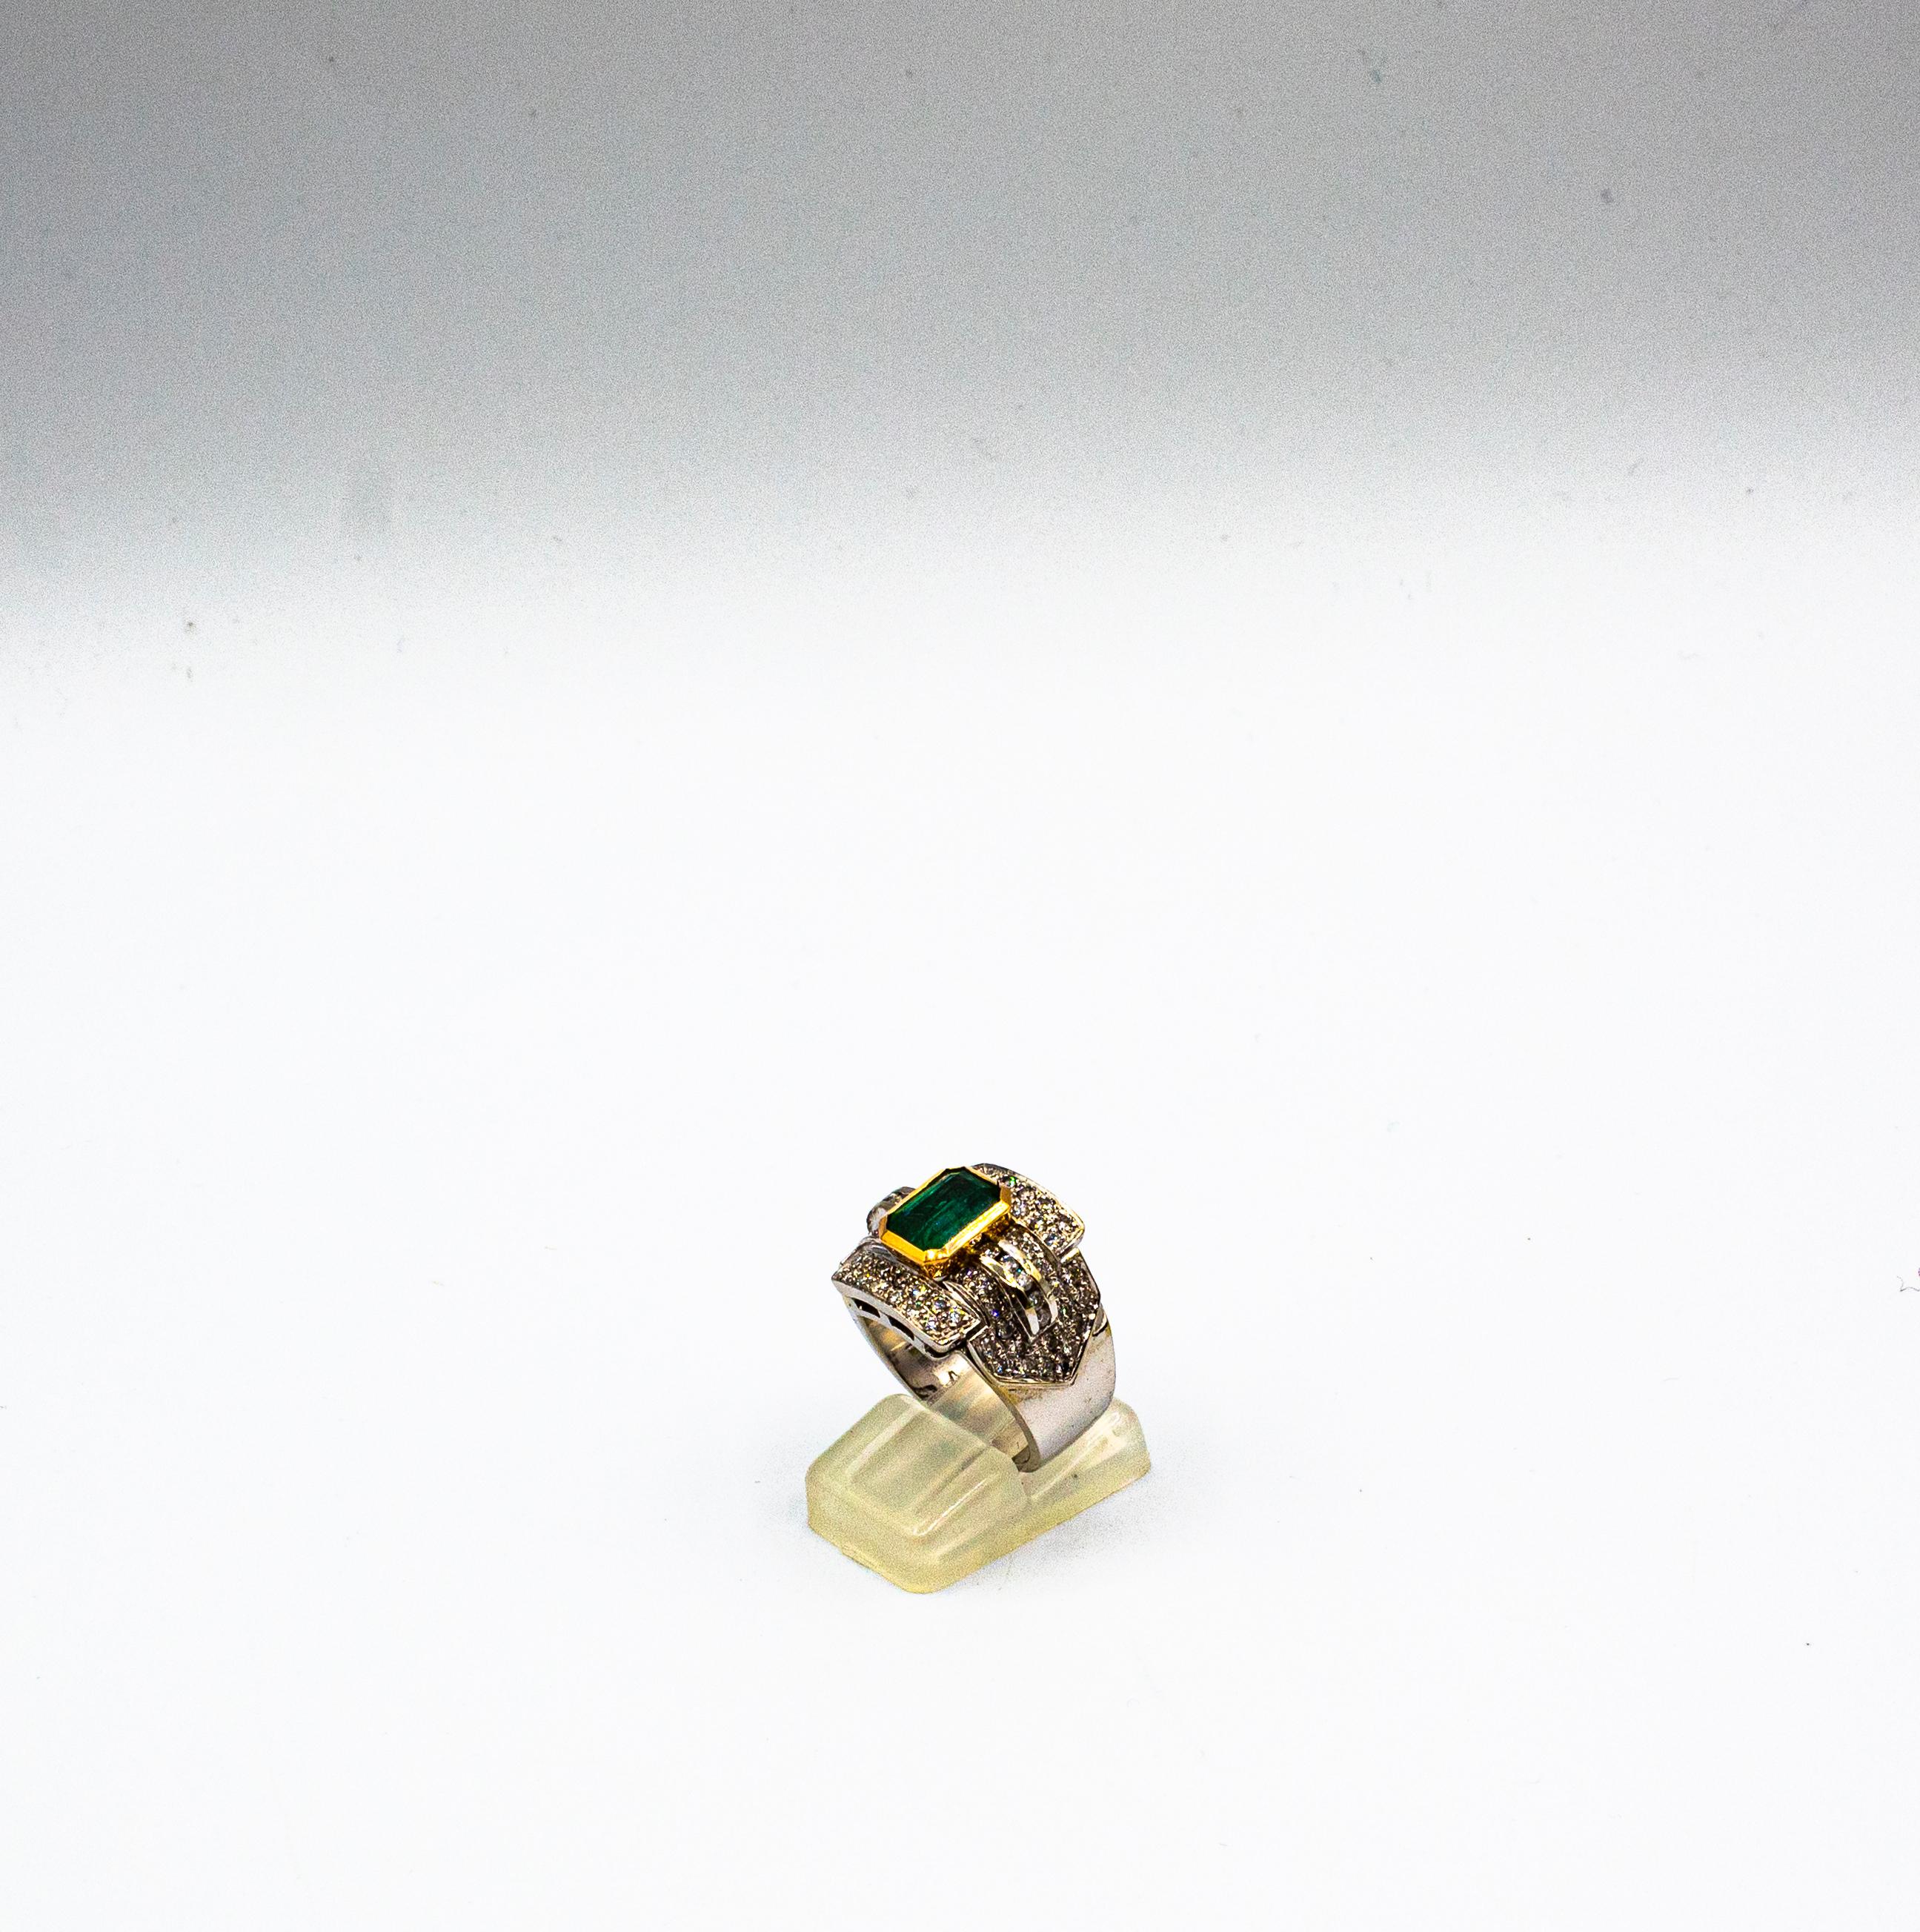 Brilliant Cut Art Deco Style Emerald Cut Emerald White Diamond White Gold Cocktail Ring For Sale